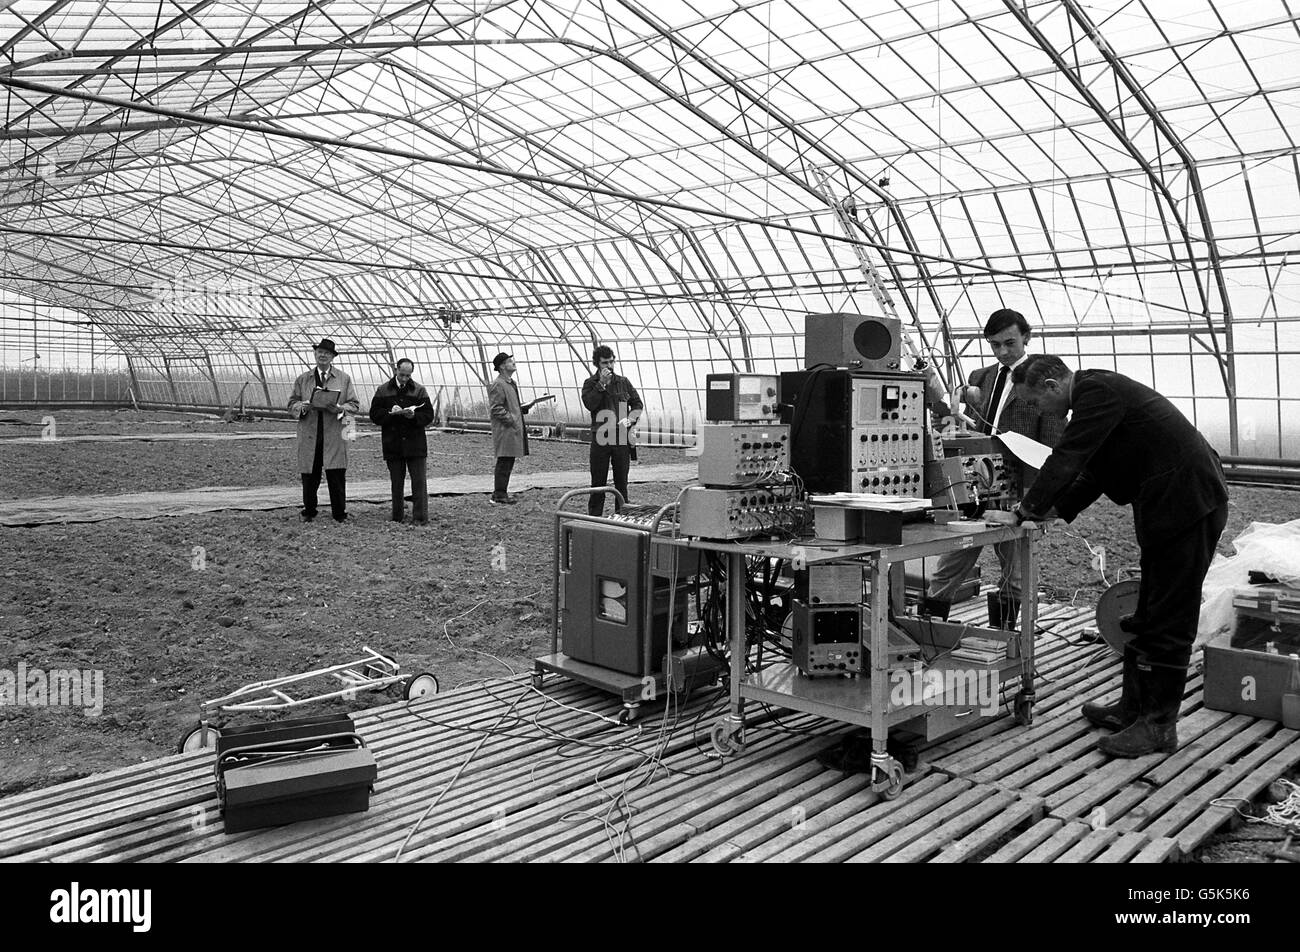 L'effet du boom sonique de Concorde est testé à la station expérimentale du ministère de l'Agriculture et de la pêche de Lymington, dans le Hampshire.Des spécialistes de l'Université de Southampton enregistrent les ondes de choc et la quantité de verre brisé suite à des explosions techniques. Banque D'Images